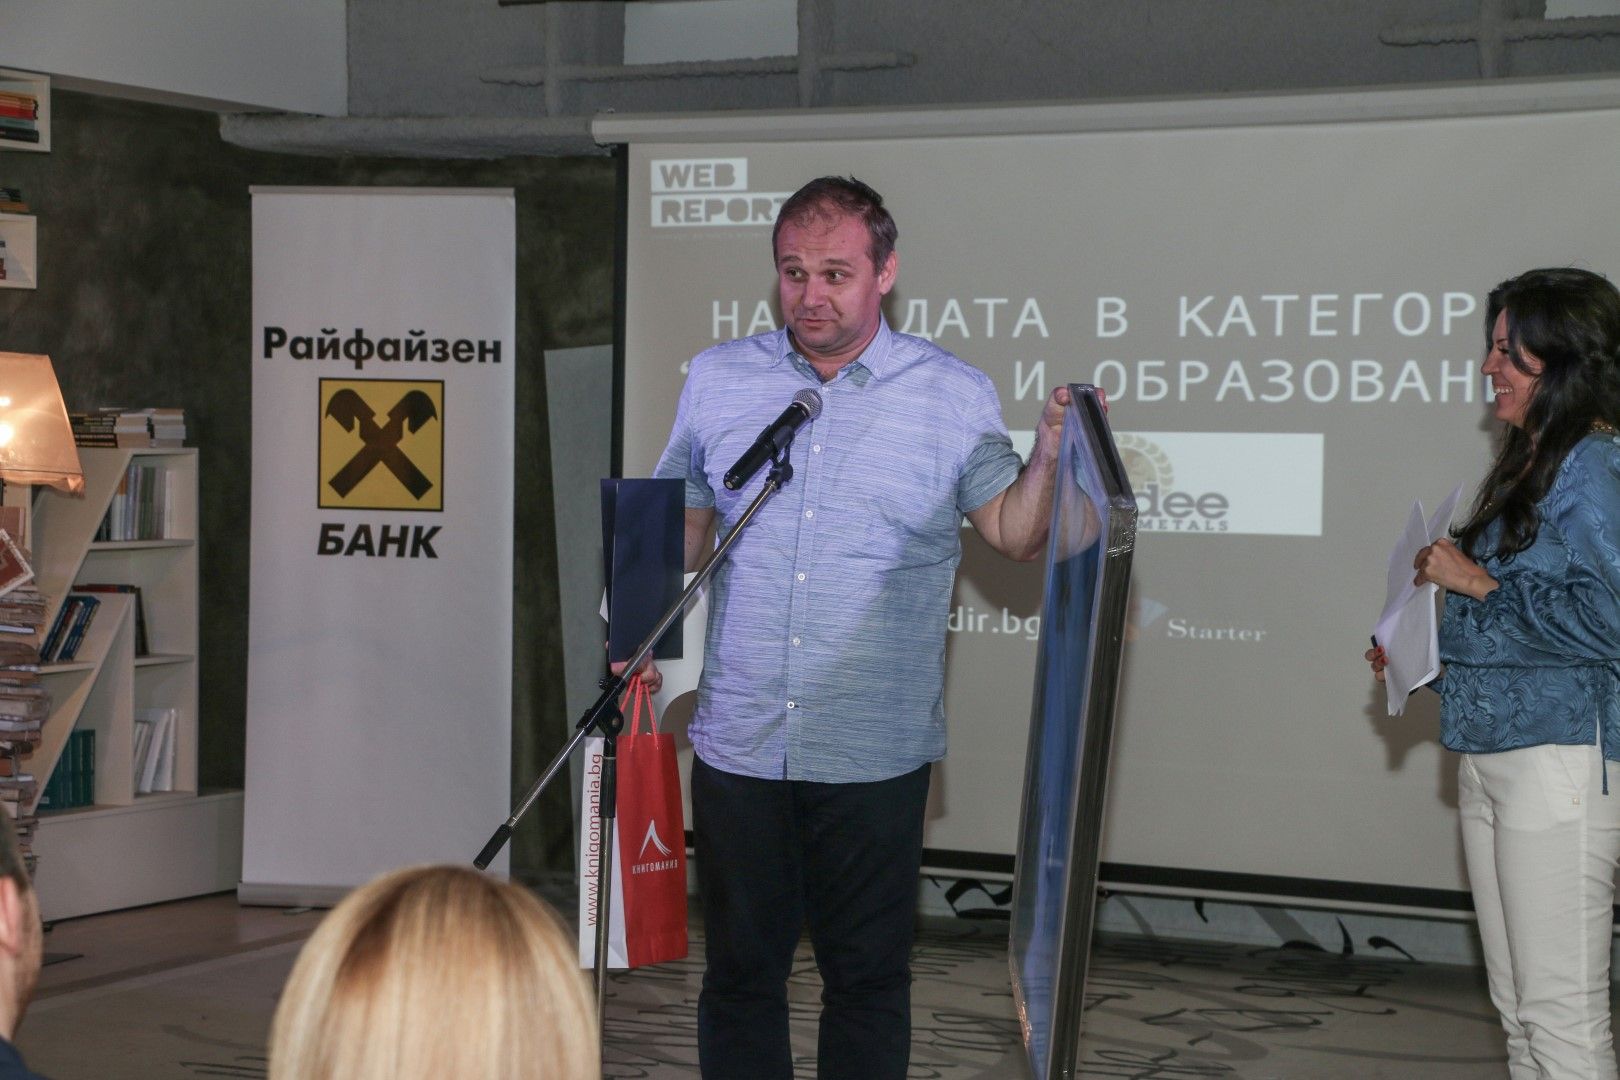 Диян Божидаров, победител в категория "Култура и образование"